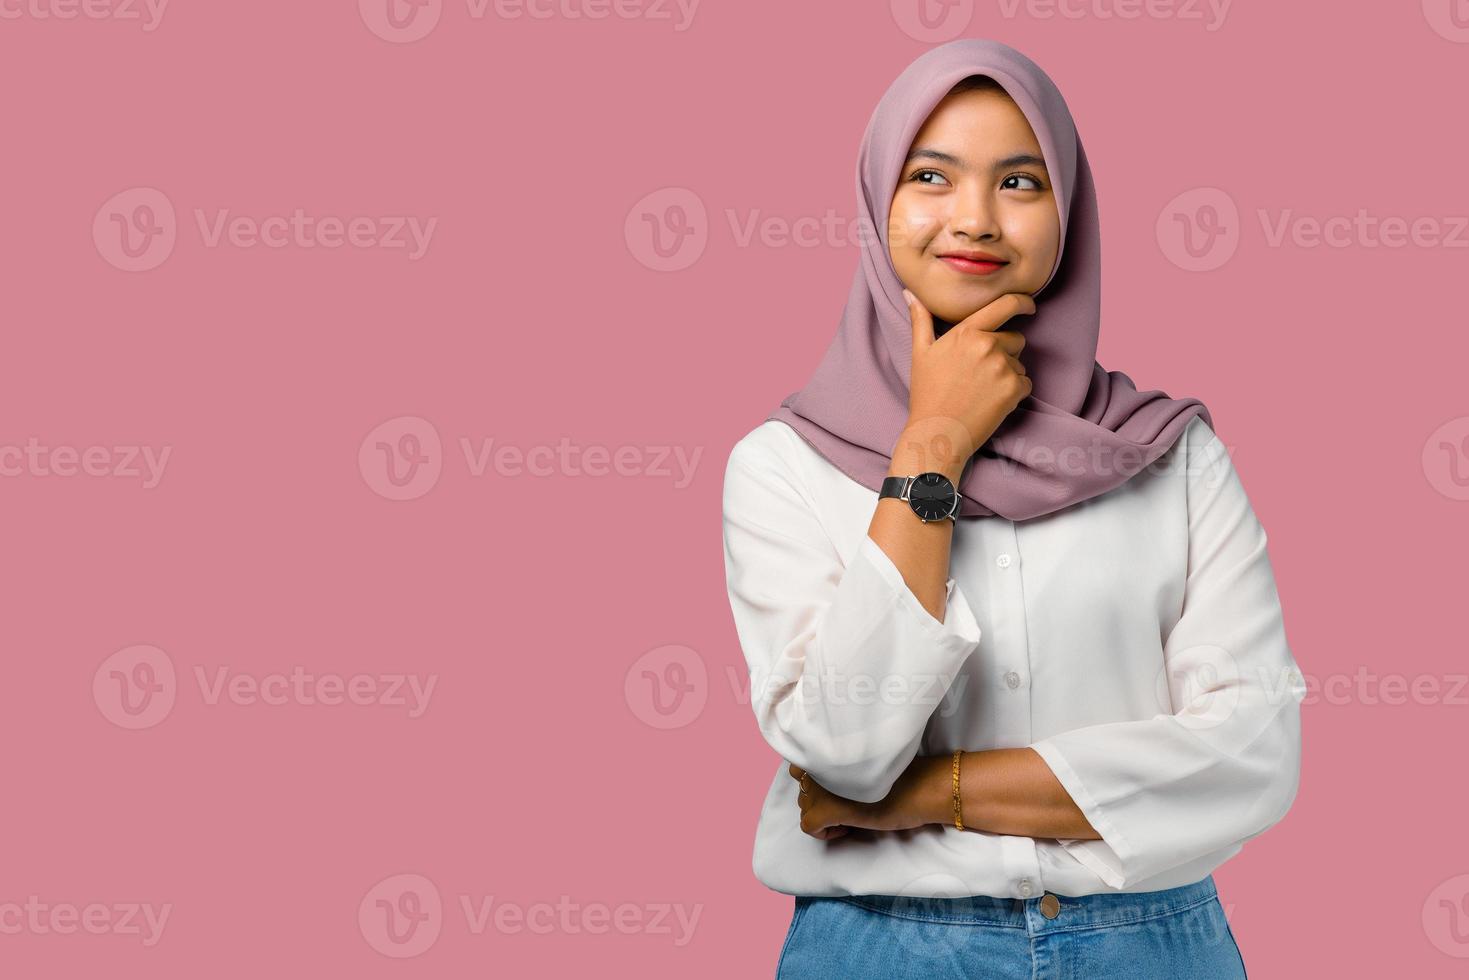 jonge gelukkige vrouw die een hijab draagt foto